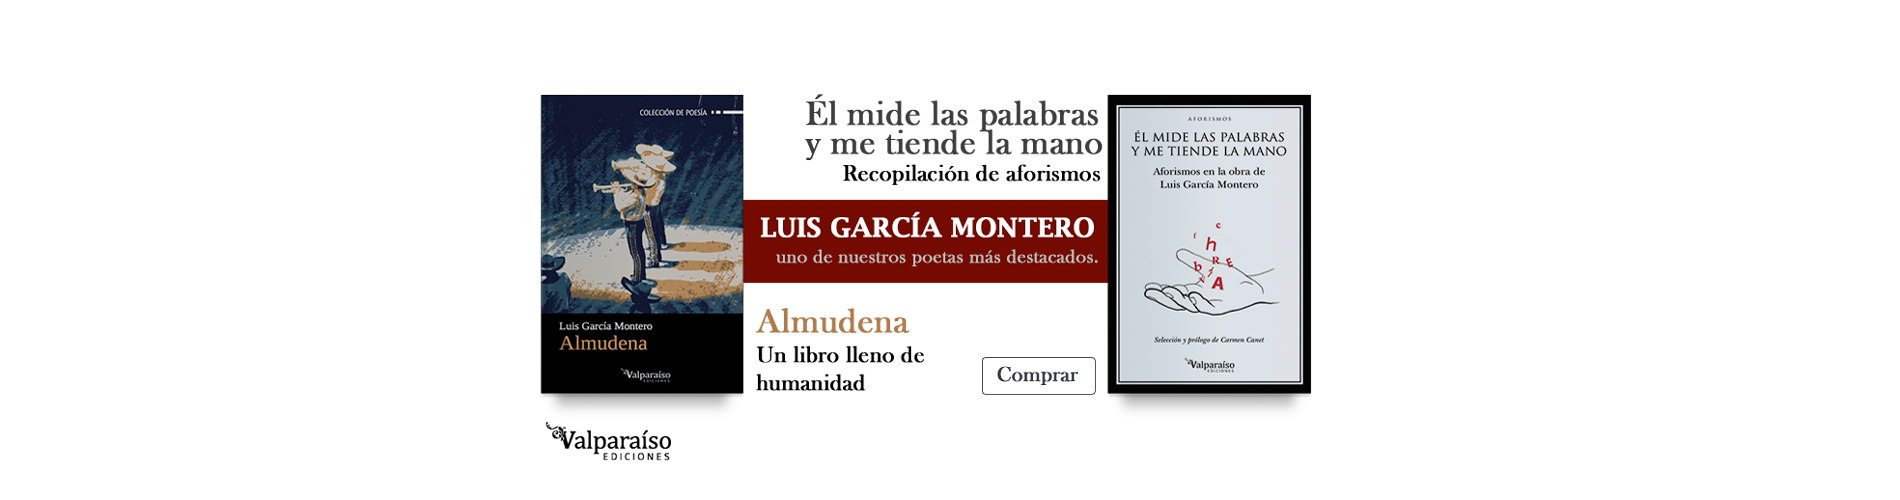 Luis García Montero, uno de nuestros poetas más destacados